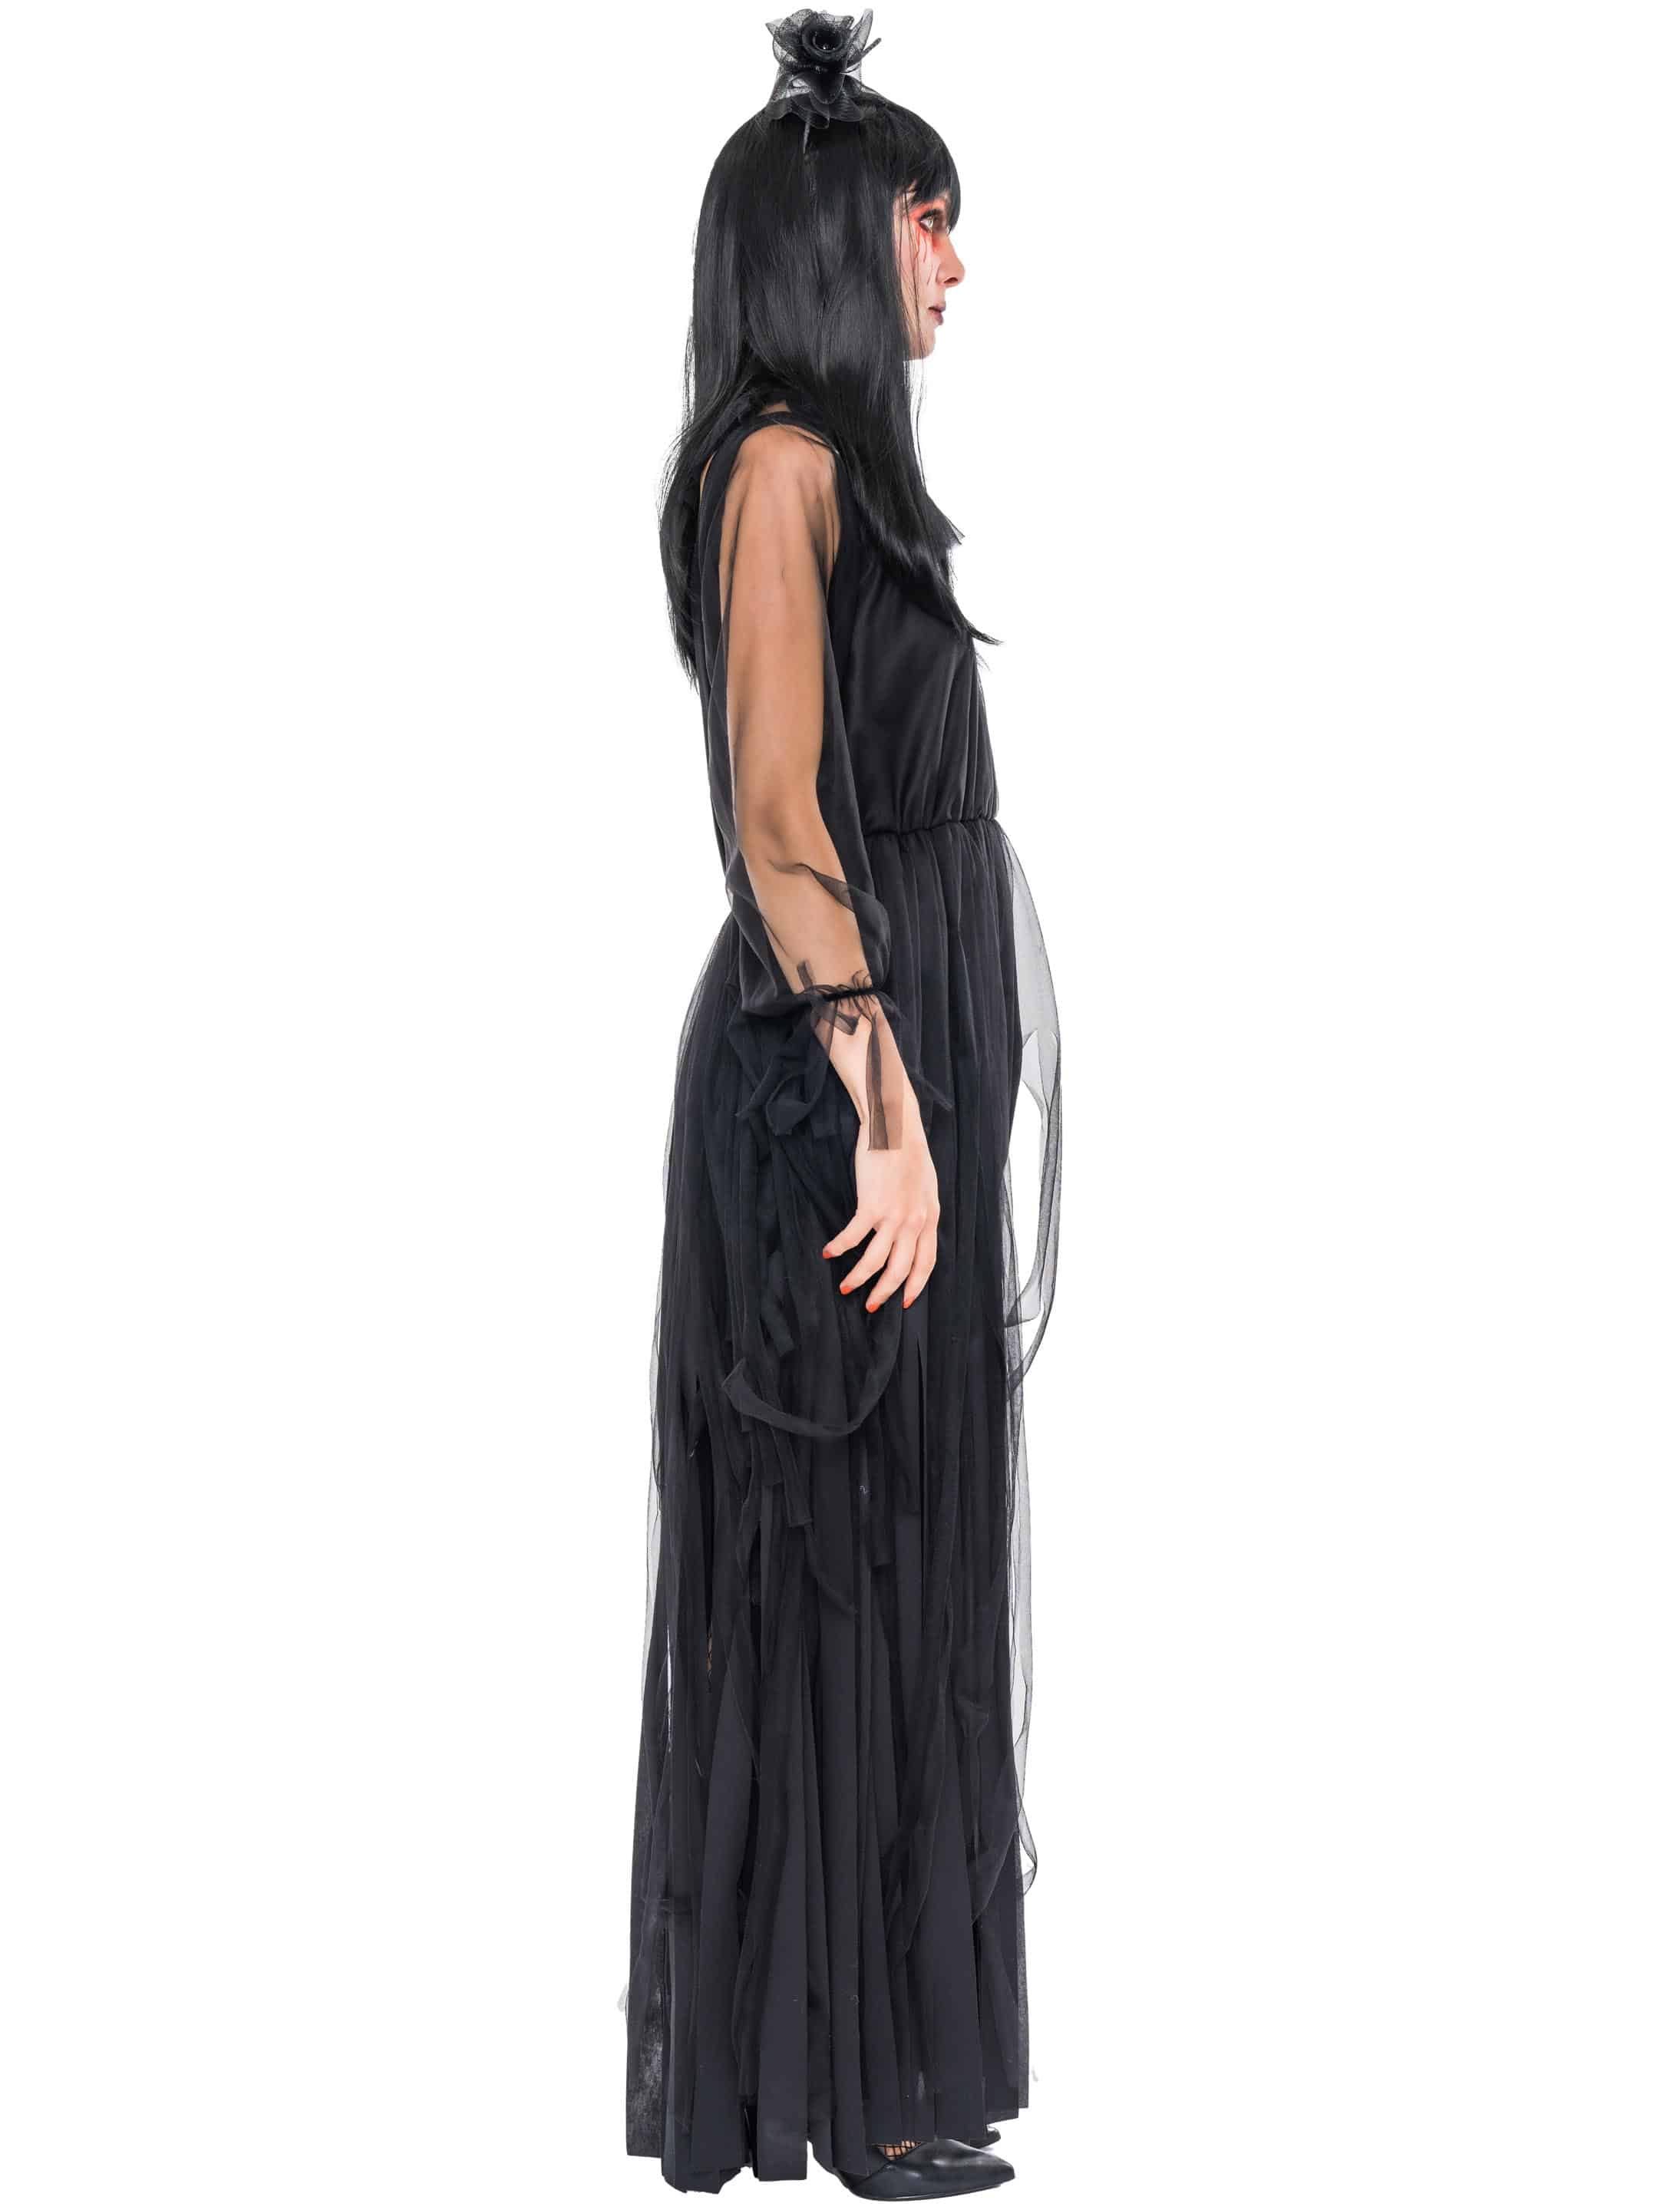 Kleid mit Tüllfransen Damen schwarz 4XL/5XL